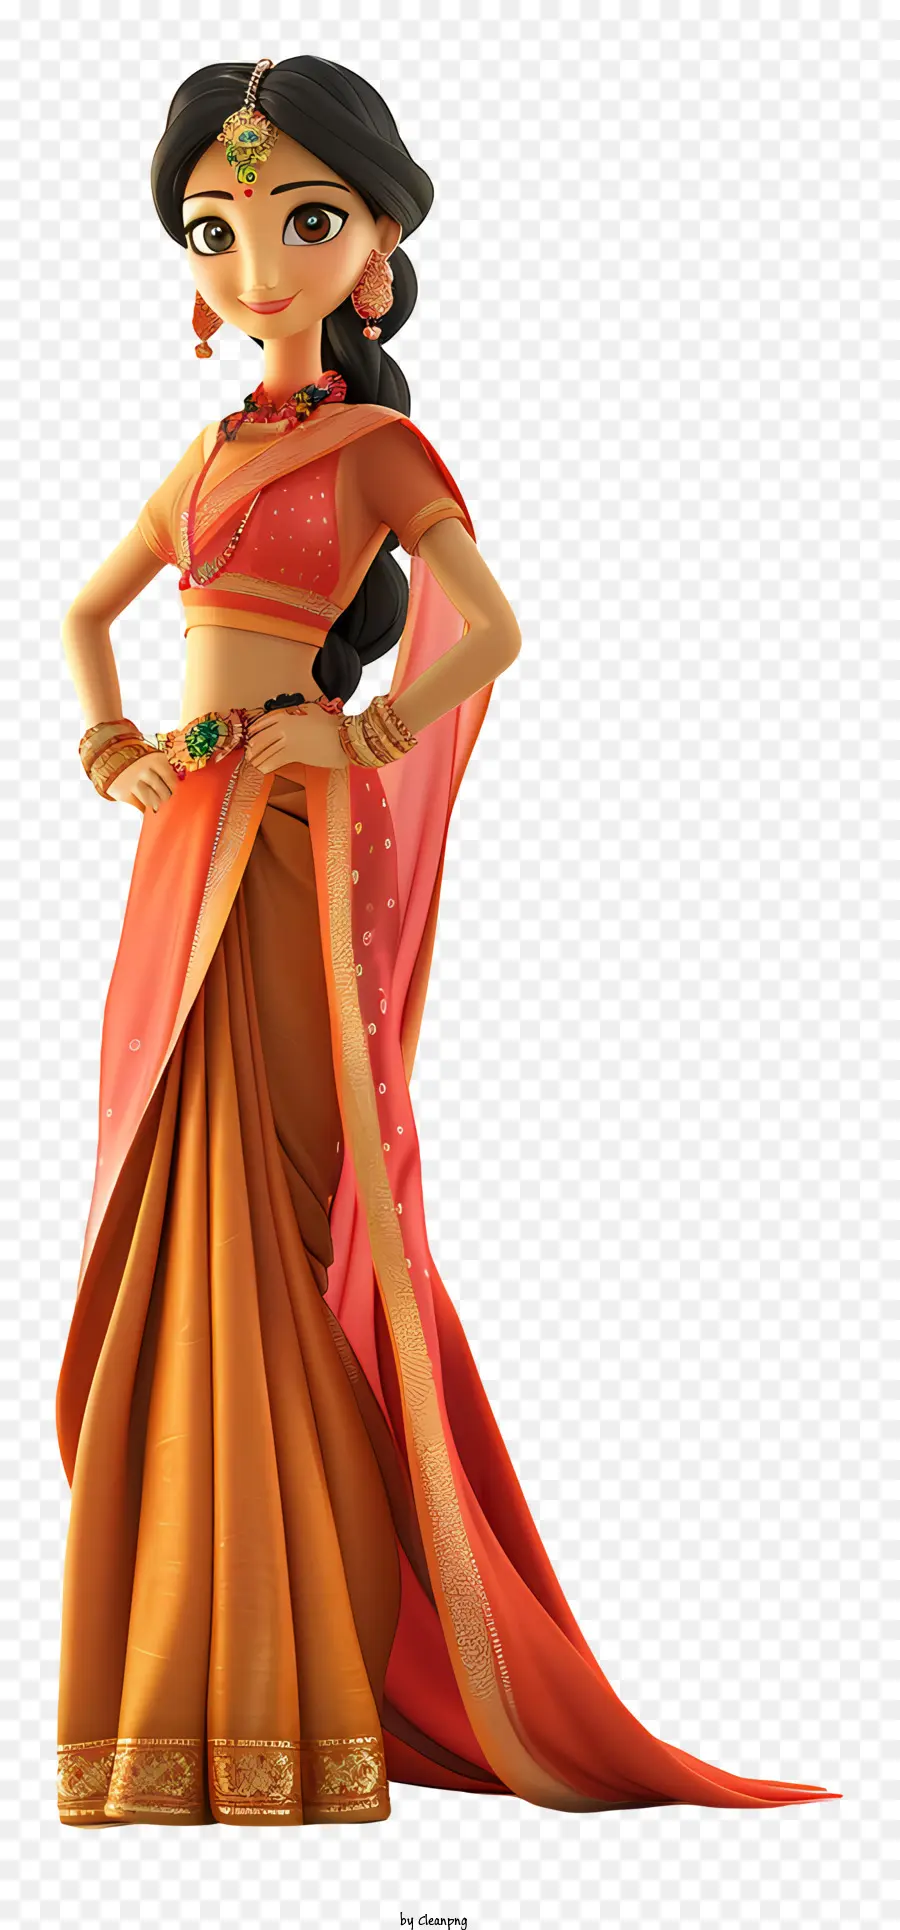 indian woman cartoon indian woman sari traditional attire orange sari